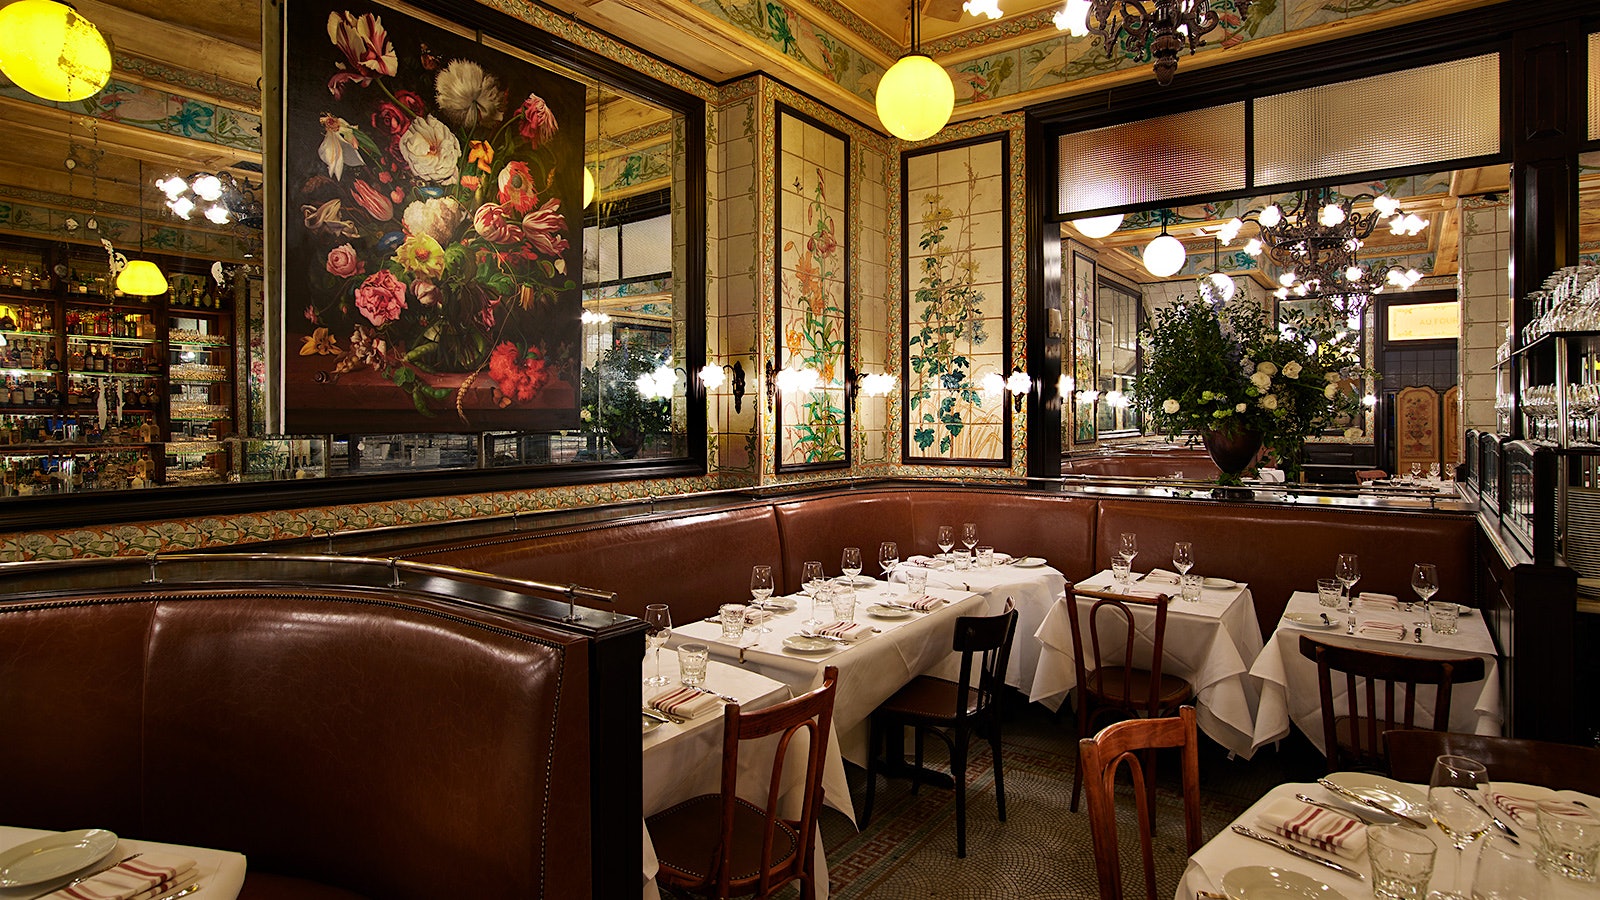  Comedor estilo bistró Le Gratin con bancos, sillas de madera, paredes cubiertas con espejos y azulejos de colores, y un cuadro floral del artista Marc Dennis